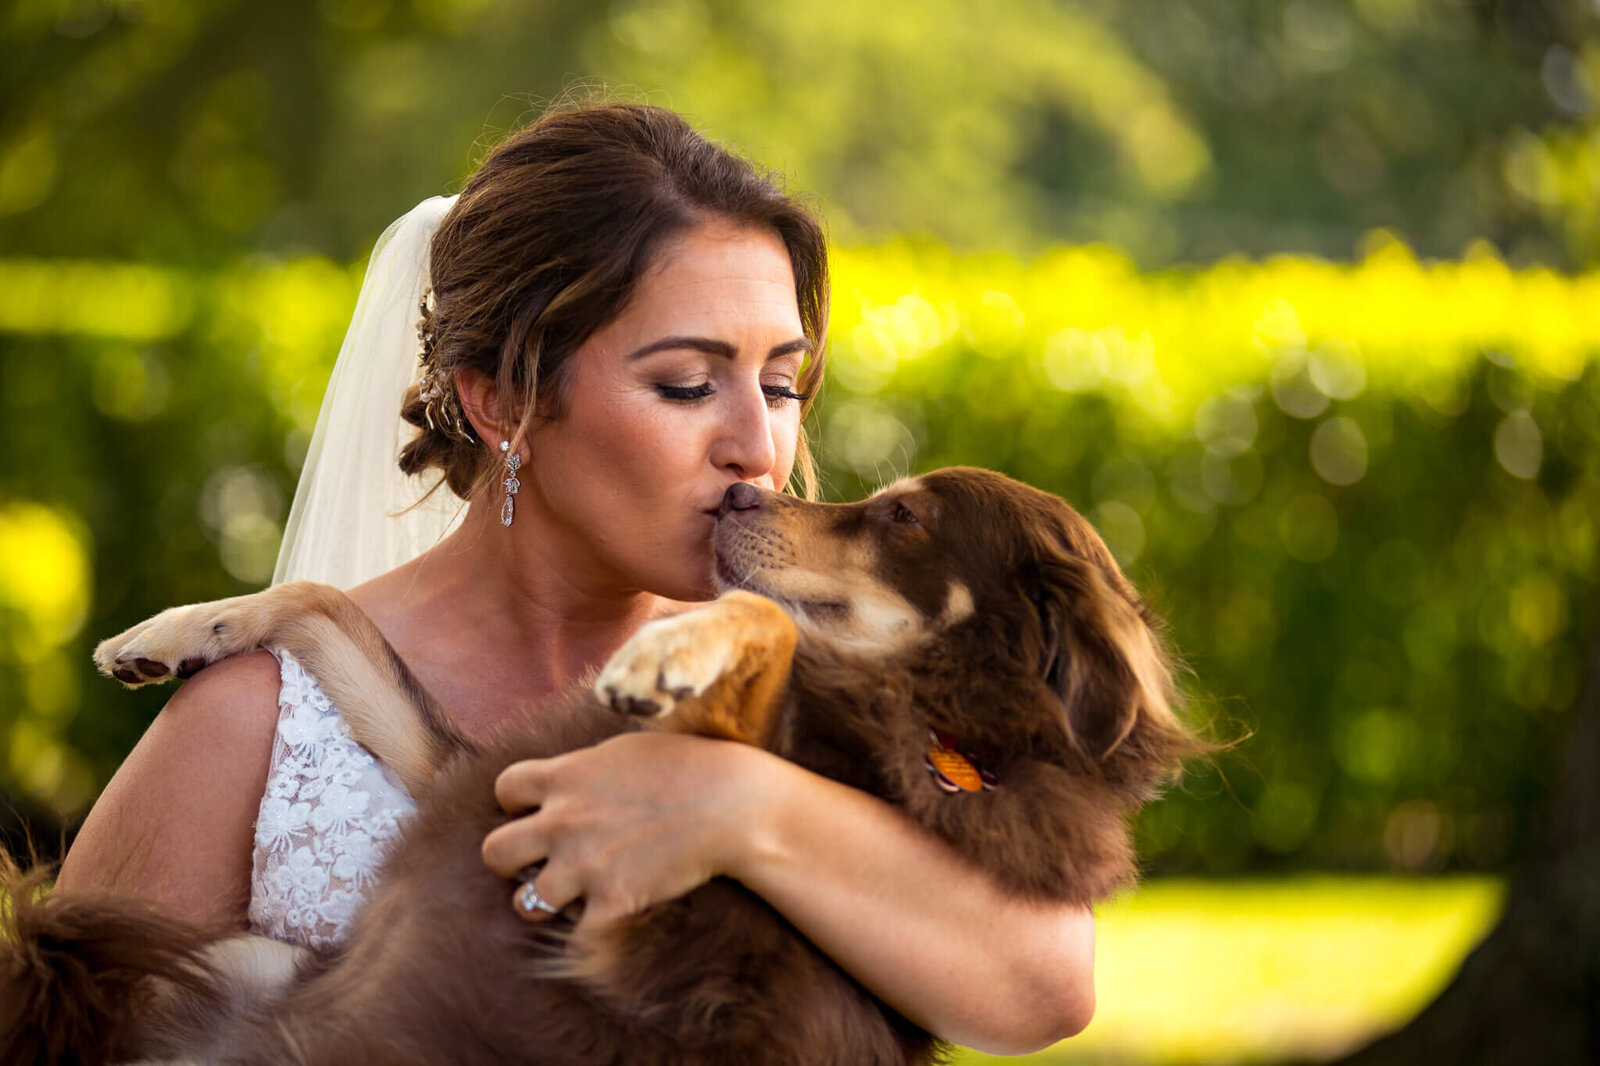 pinecroft-mansion-cincinnati-wedding-bride-dog